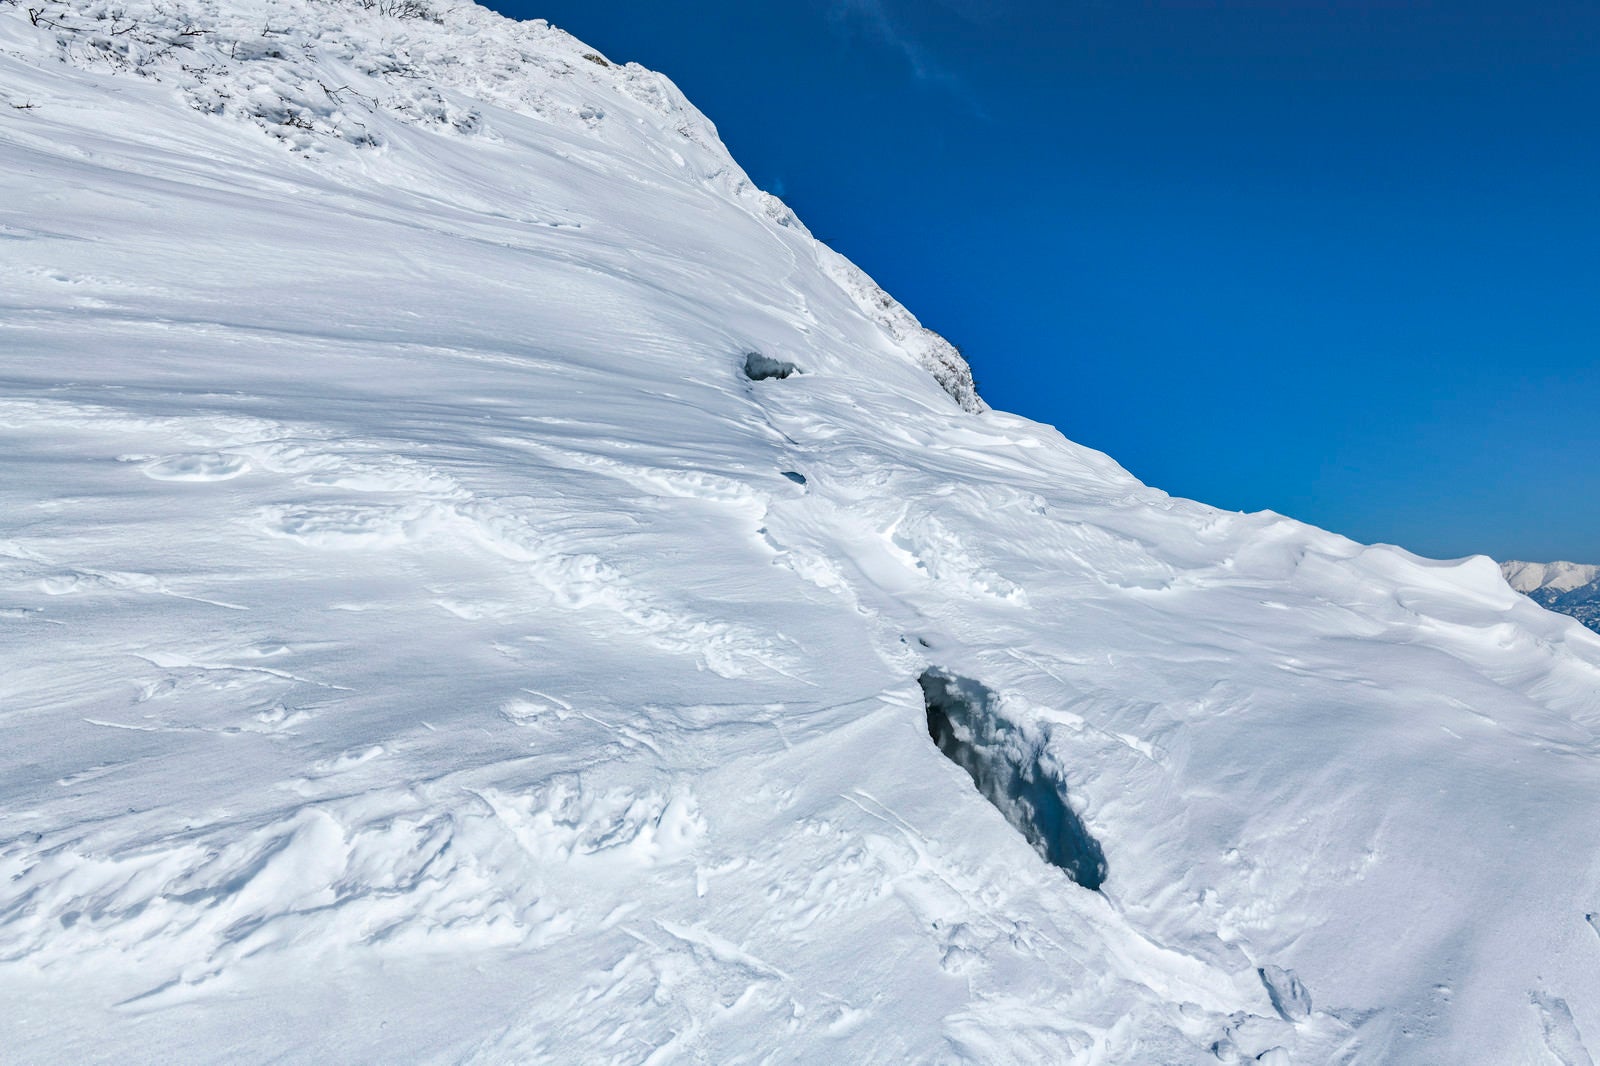 「今にも裂けて落ちそうな谷川岳の雪庇」の写真